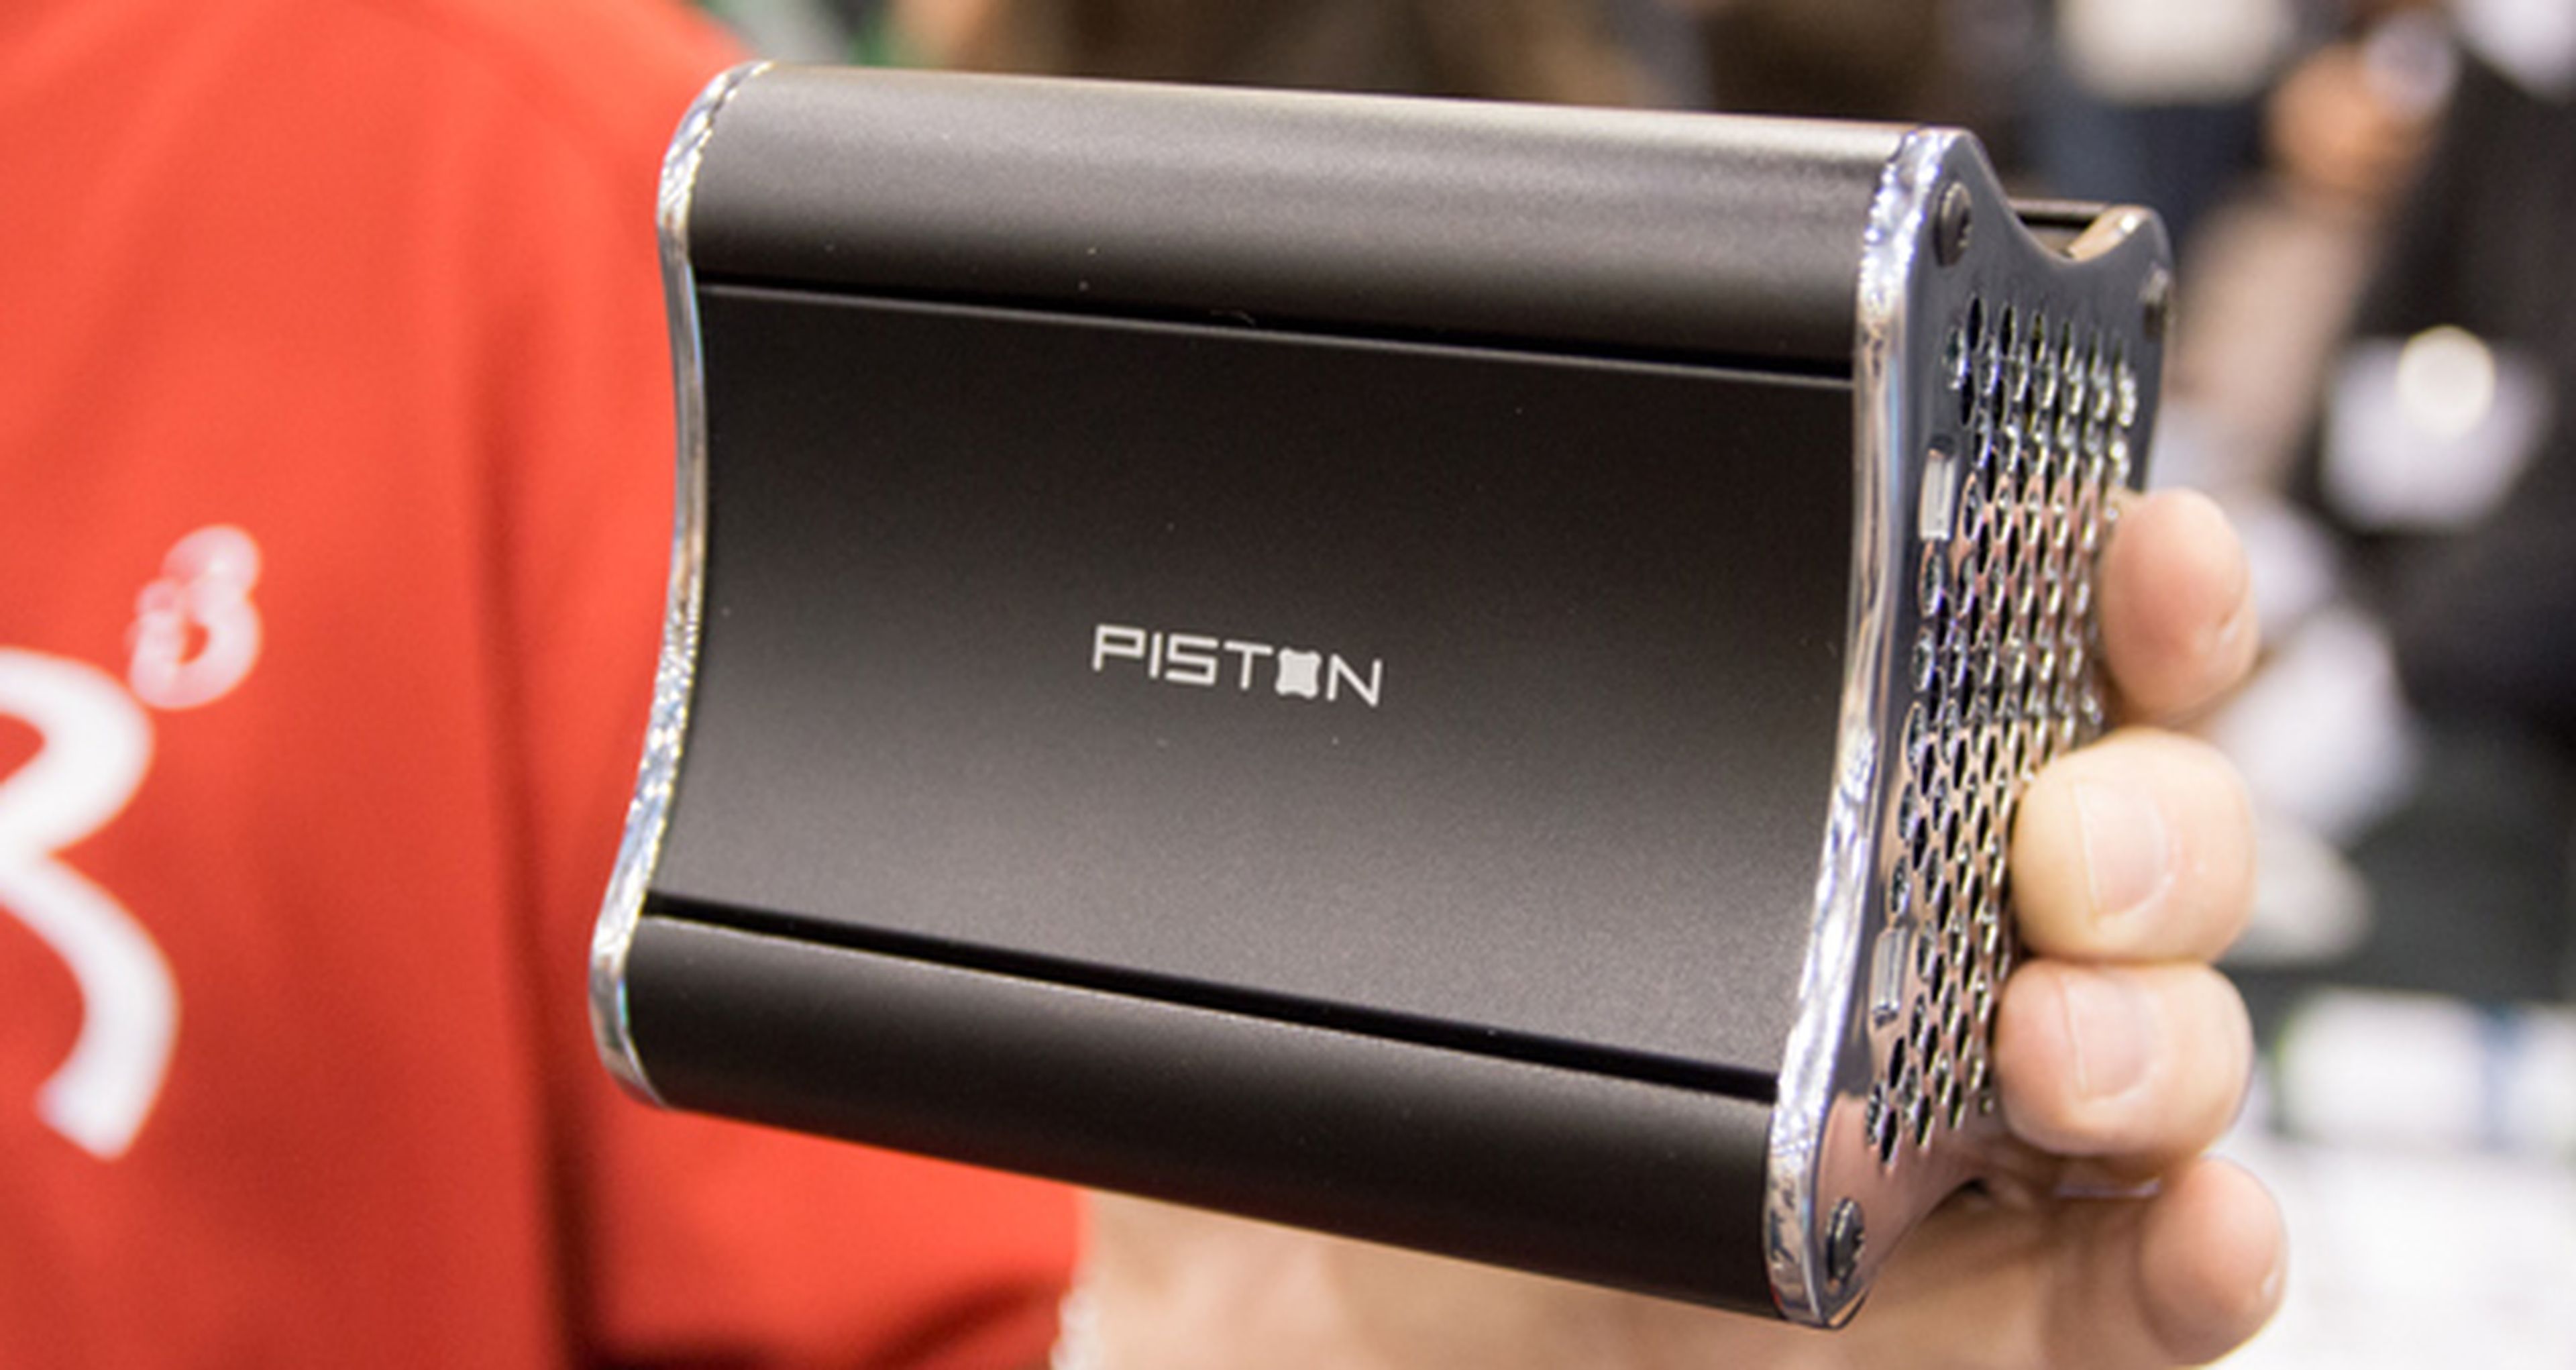 Piston no es el único Steam Box en el CES 2013